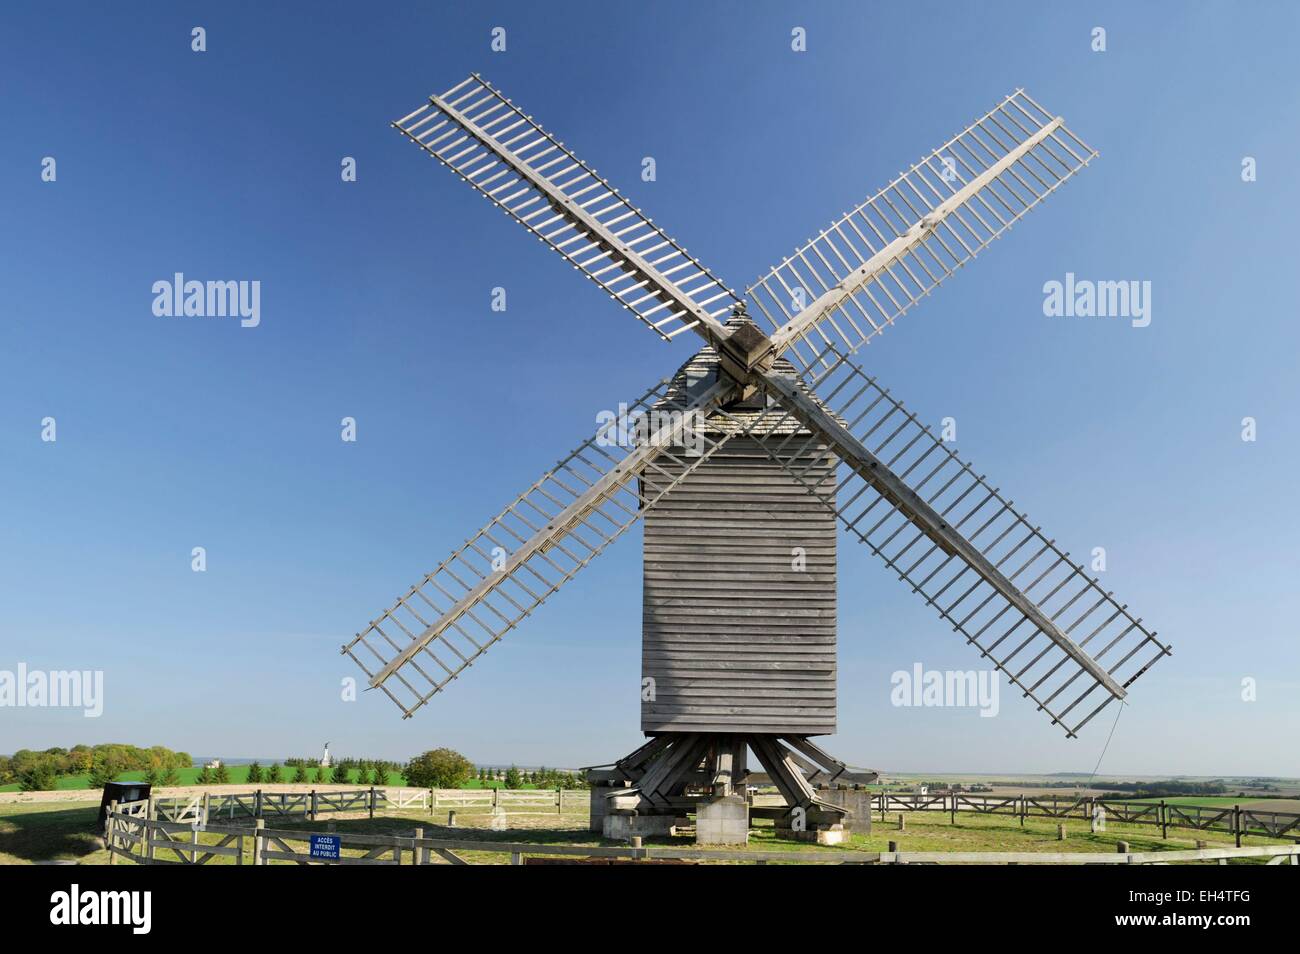 France, Marne, Valmy, moulin de Valmy qui symbolise la victoire française sur les Prussiens lors de la bataille de Valmy en 1792 Banque D'Images